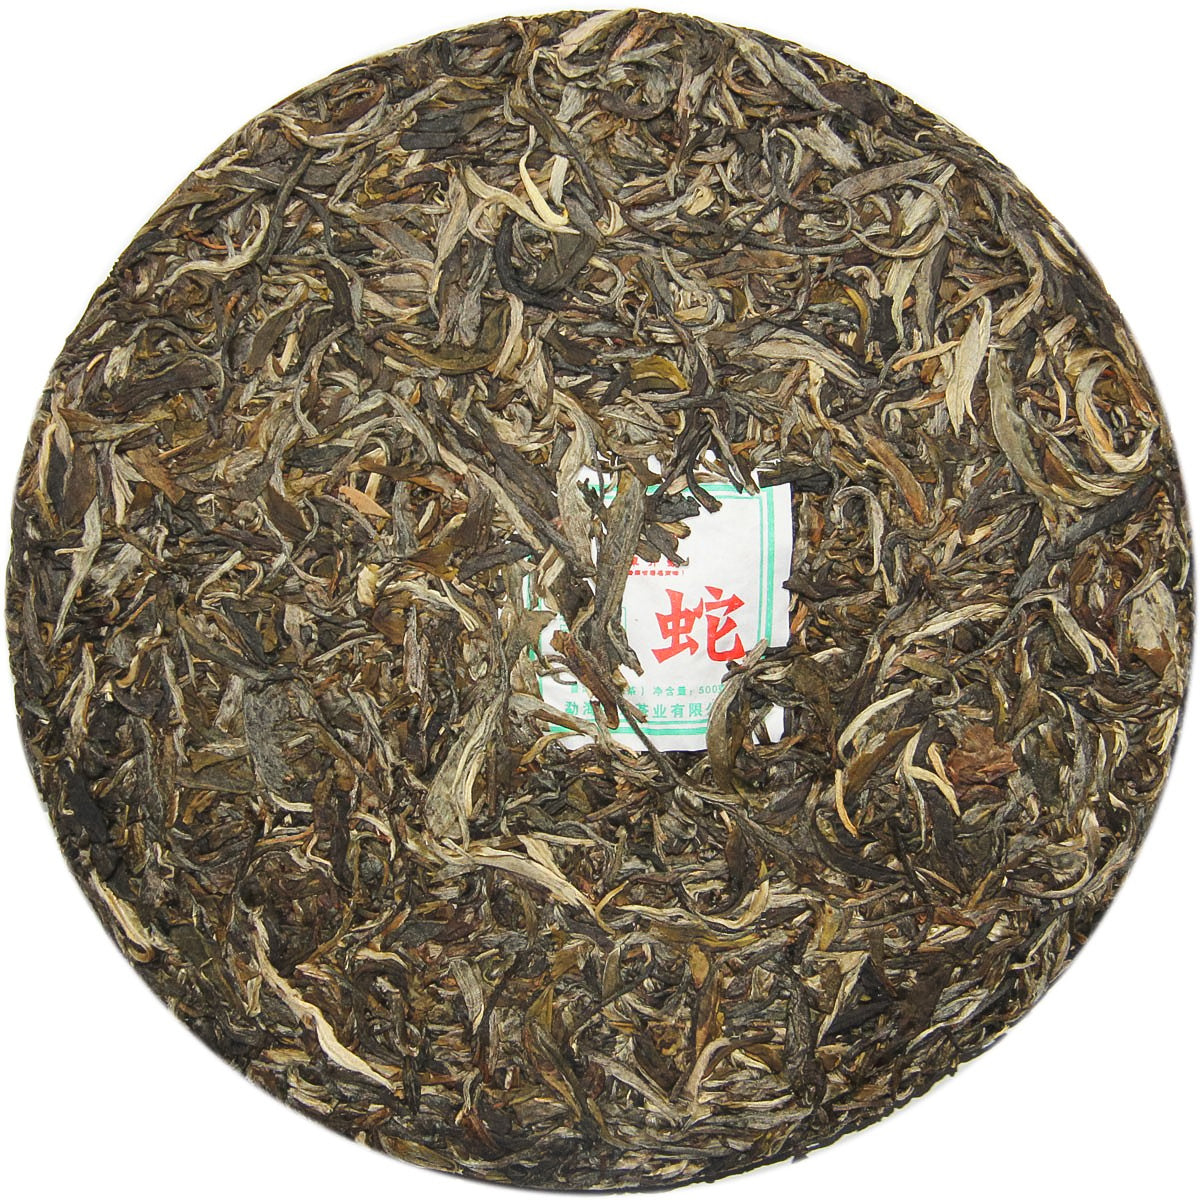 
                  
                    Chen Sheng Hao 2013 Zodiac Snake Raw Pu'er Tea Leaves
                  
                